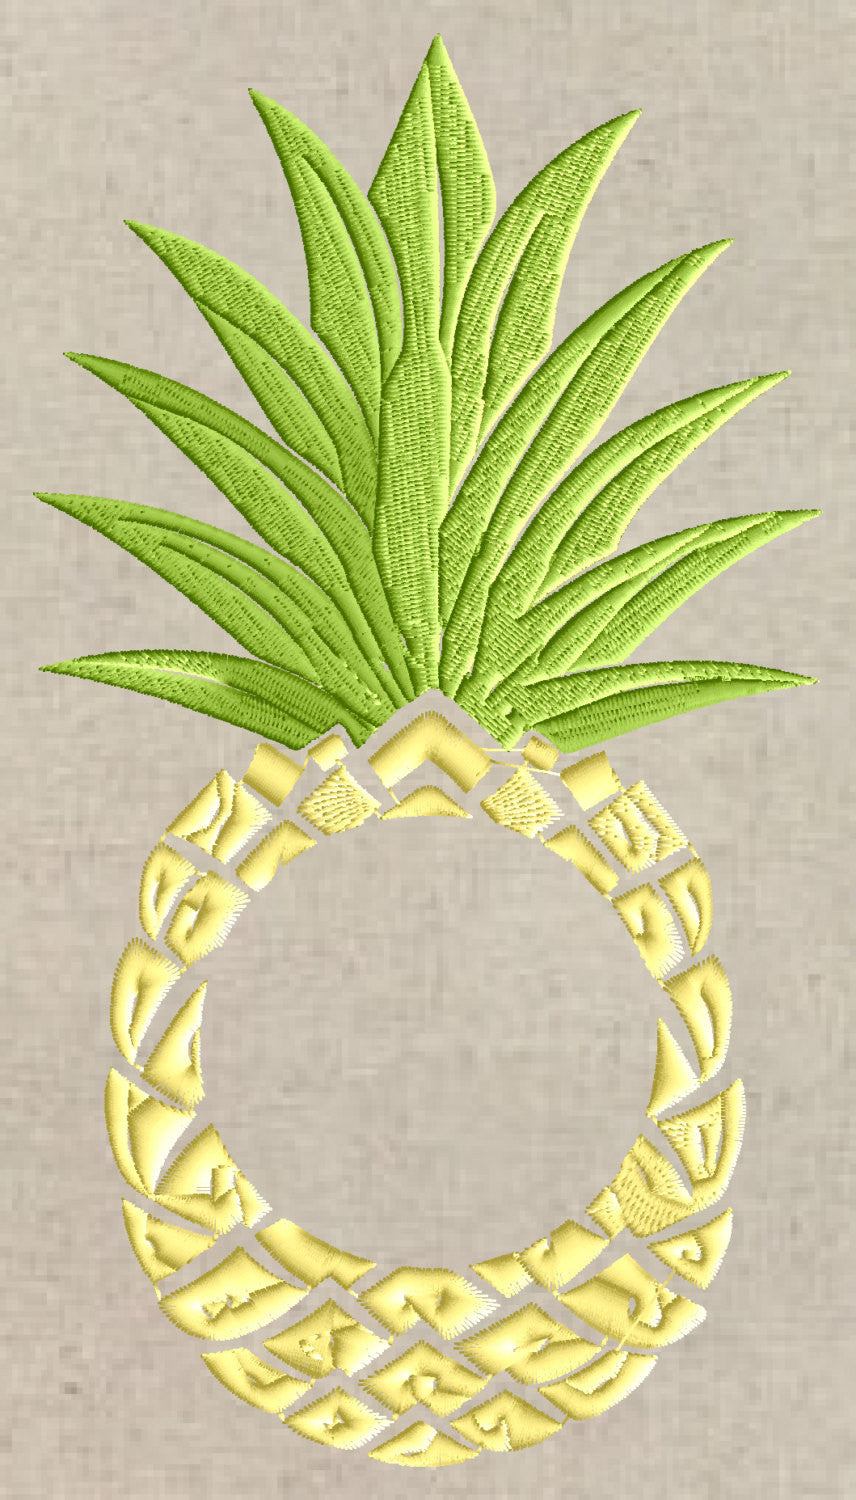 Pineapple Frame Design - Fruit - EMBROIDERY DESIGN FILE - Instant download - Dst Hus Jef Pes Exp formats